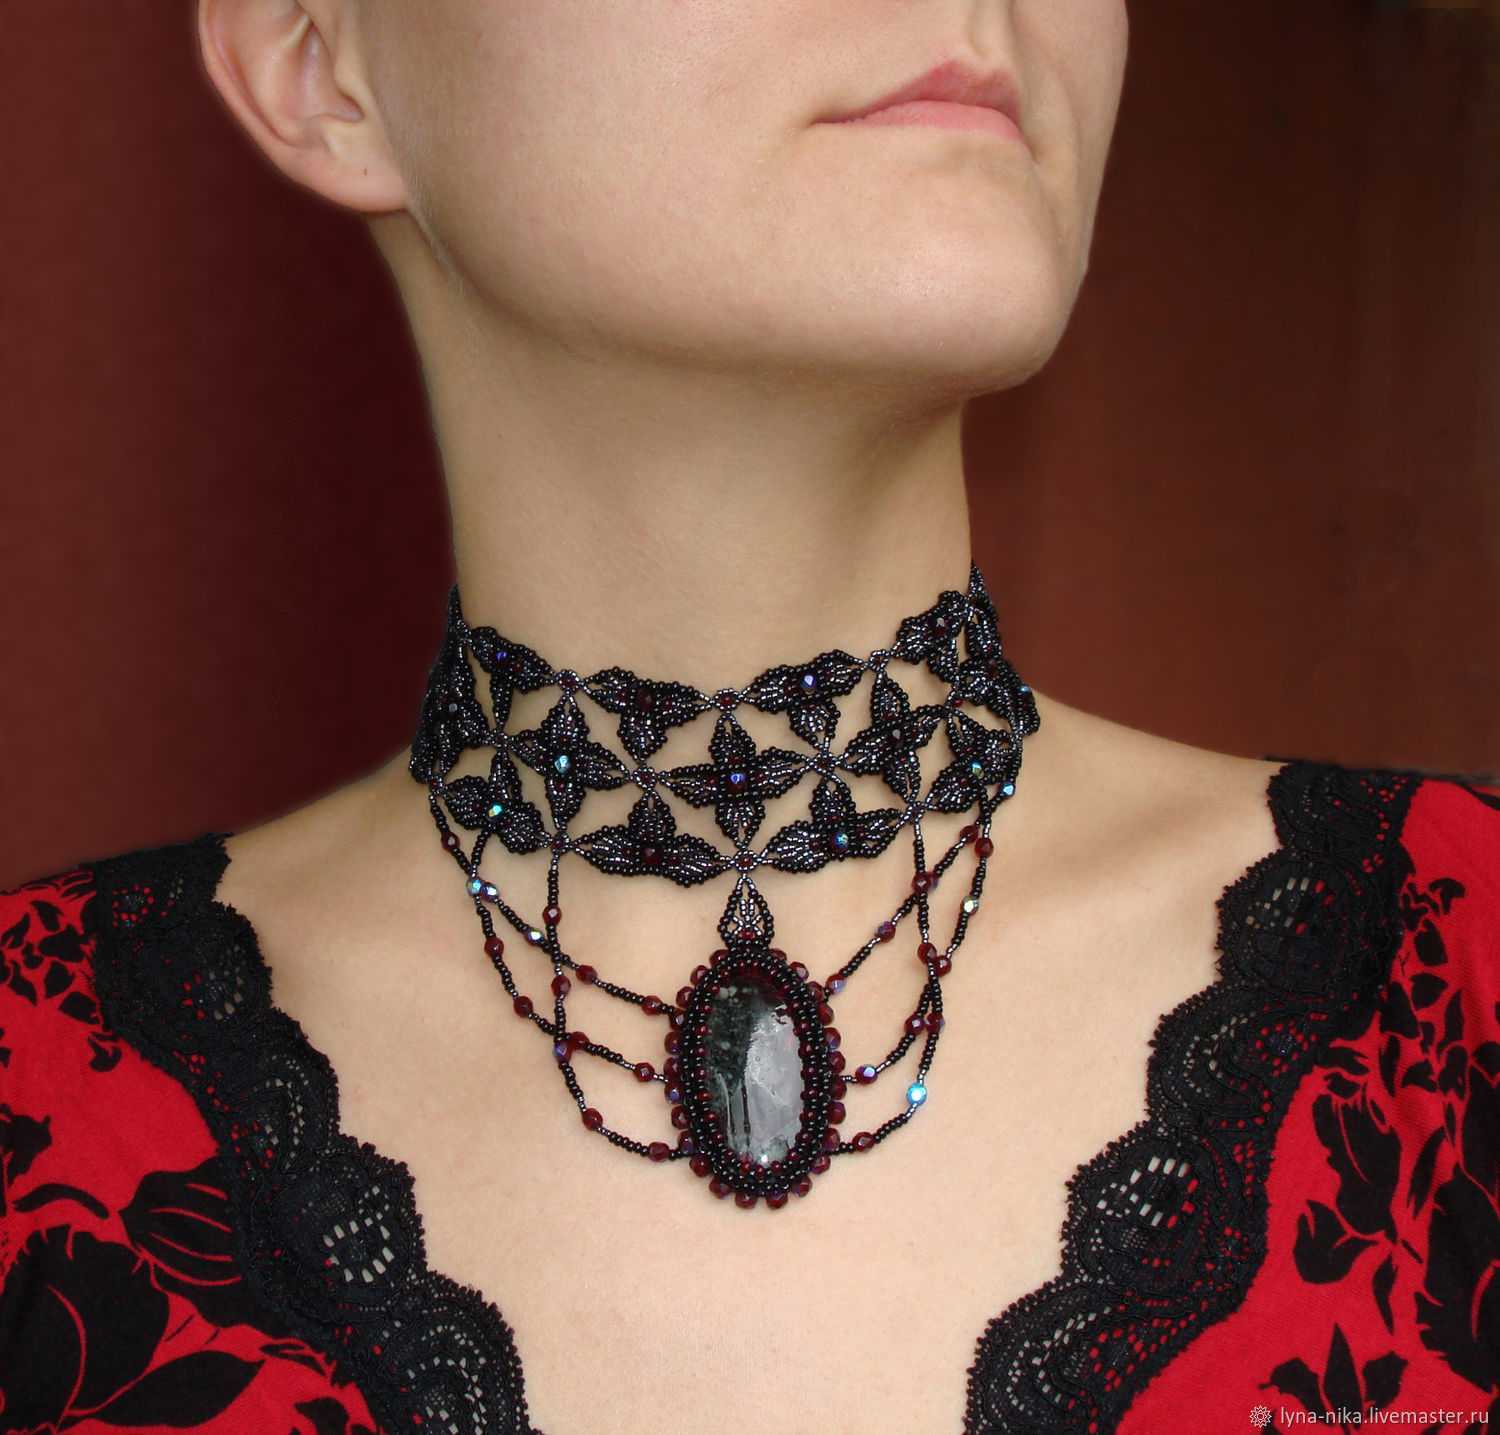 Ожерелья – ювелирные украшения на шею: их виды, как подобрать и носить